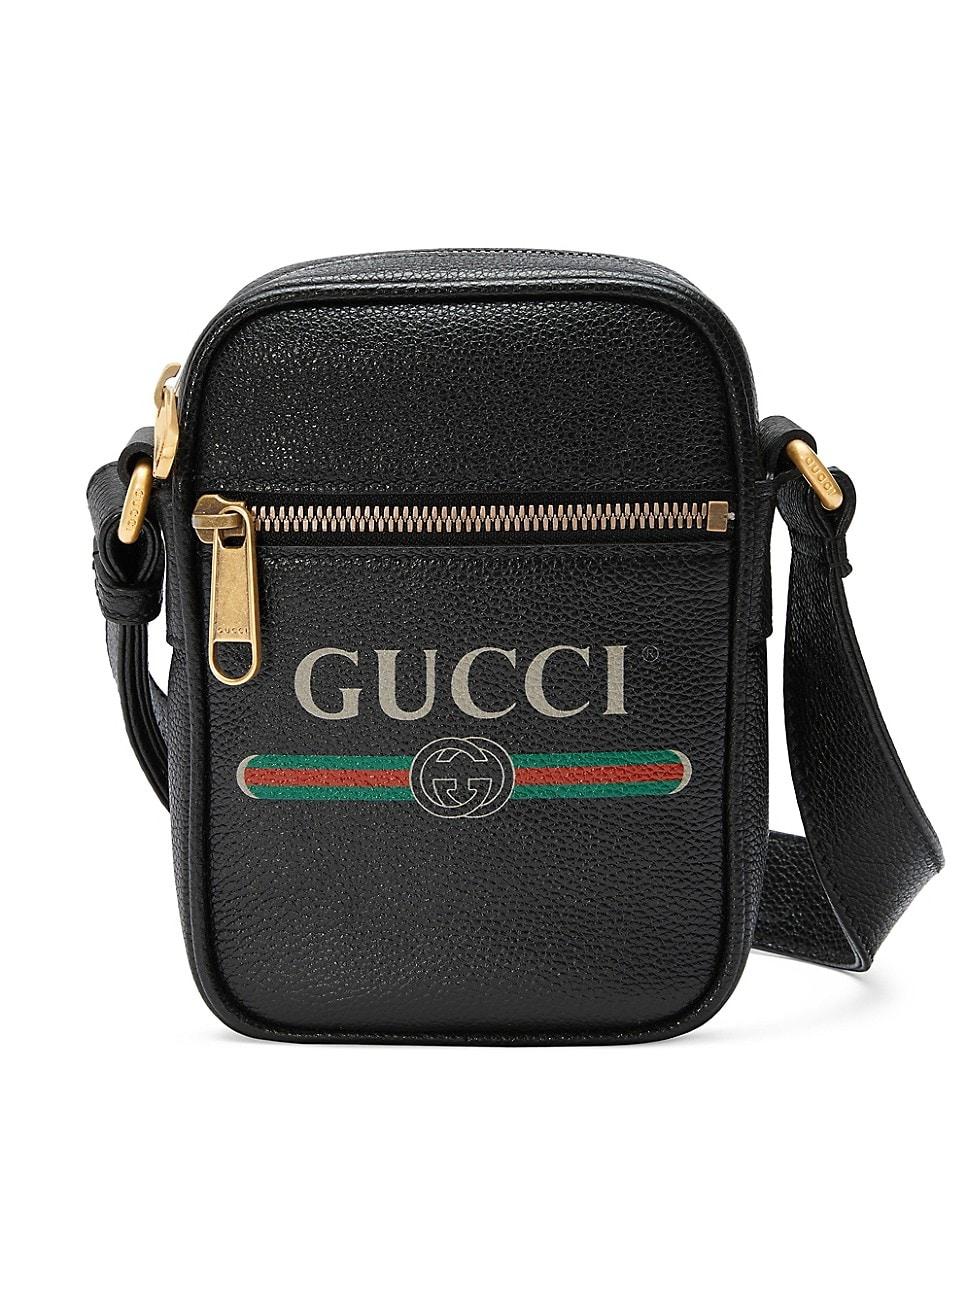 Gucci Print Leather Shoulder Bag in Black for Men | Lyst